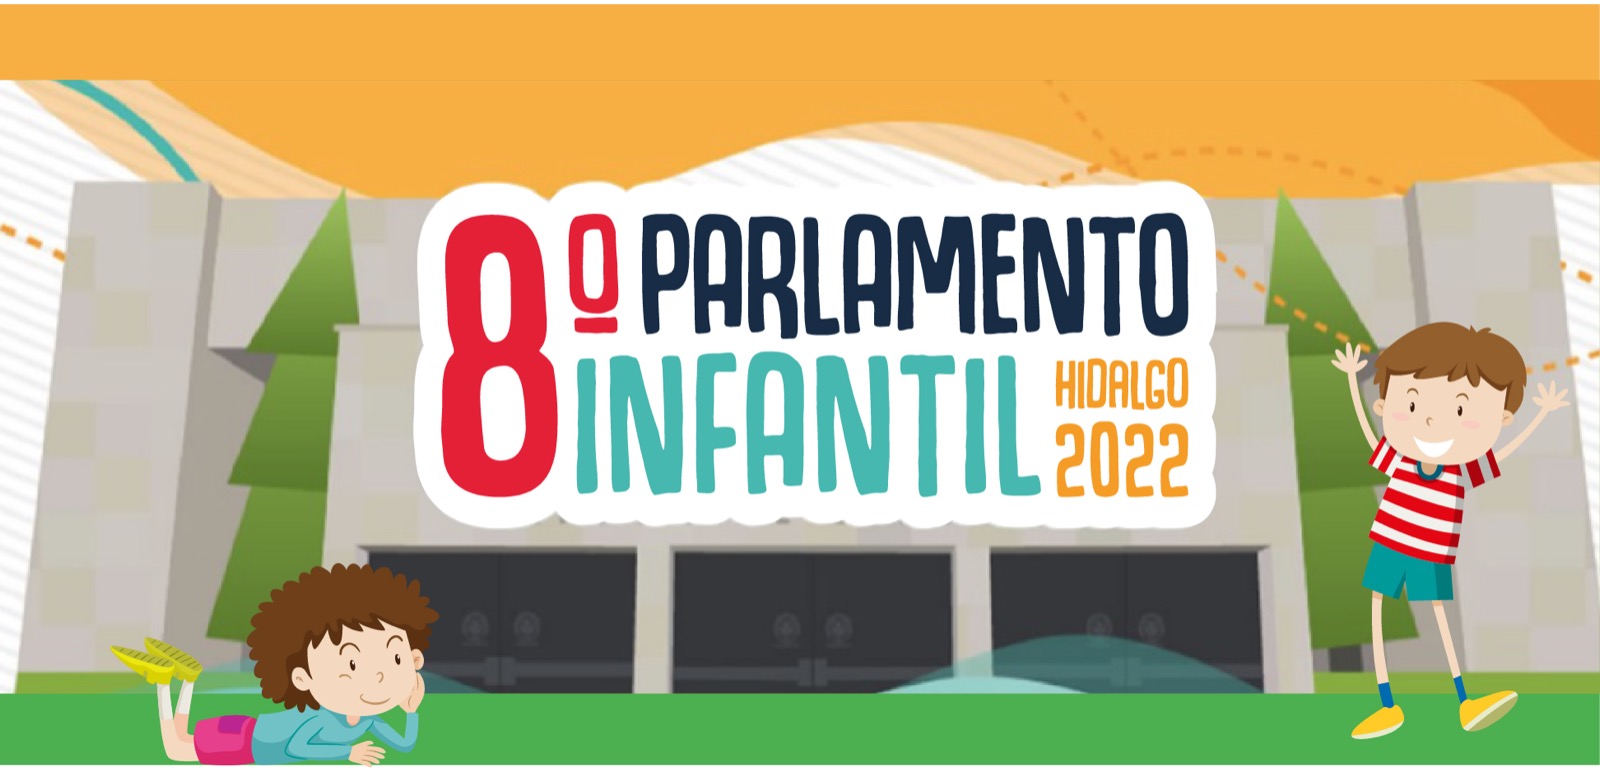 imagen que te permite conocer información sobre el 8vo parlamento infantil